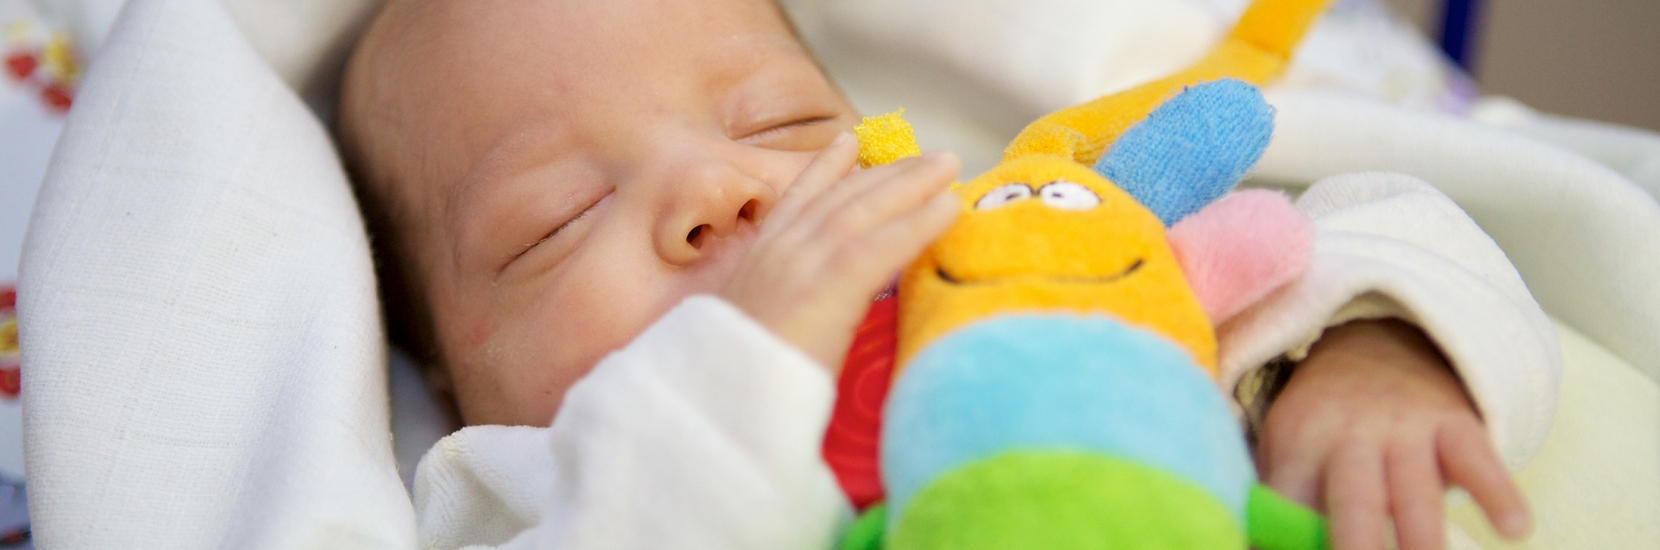 Trucs et astuces pour vivre plus sereinement avec votre bébé